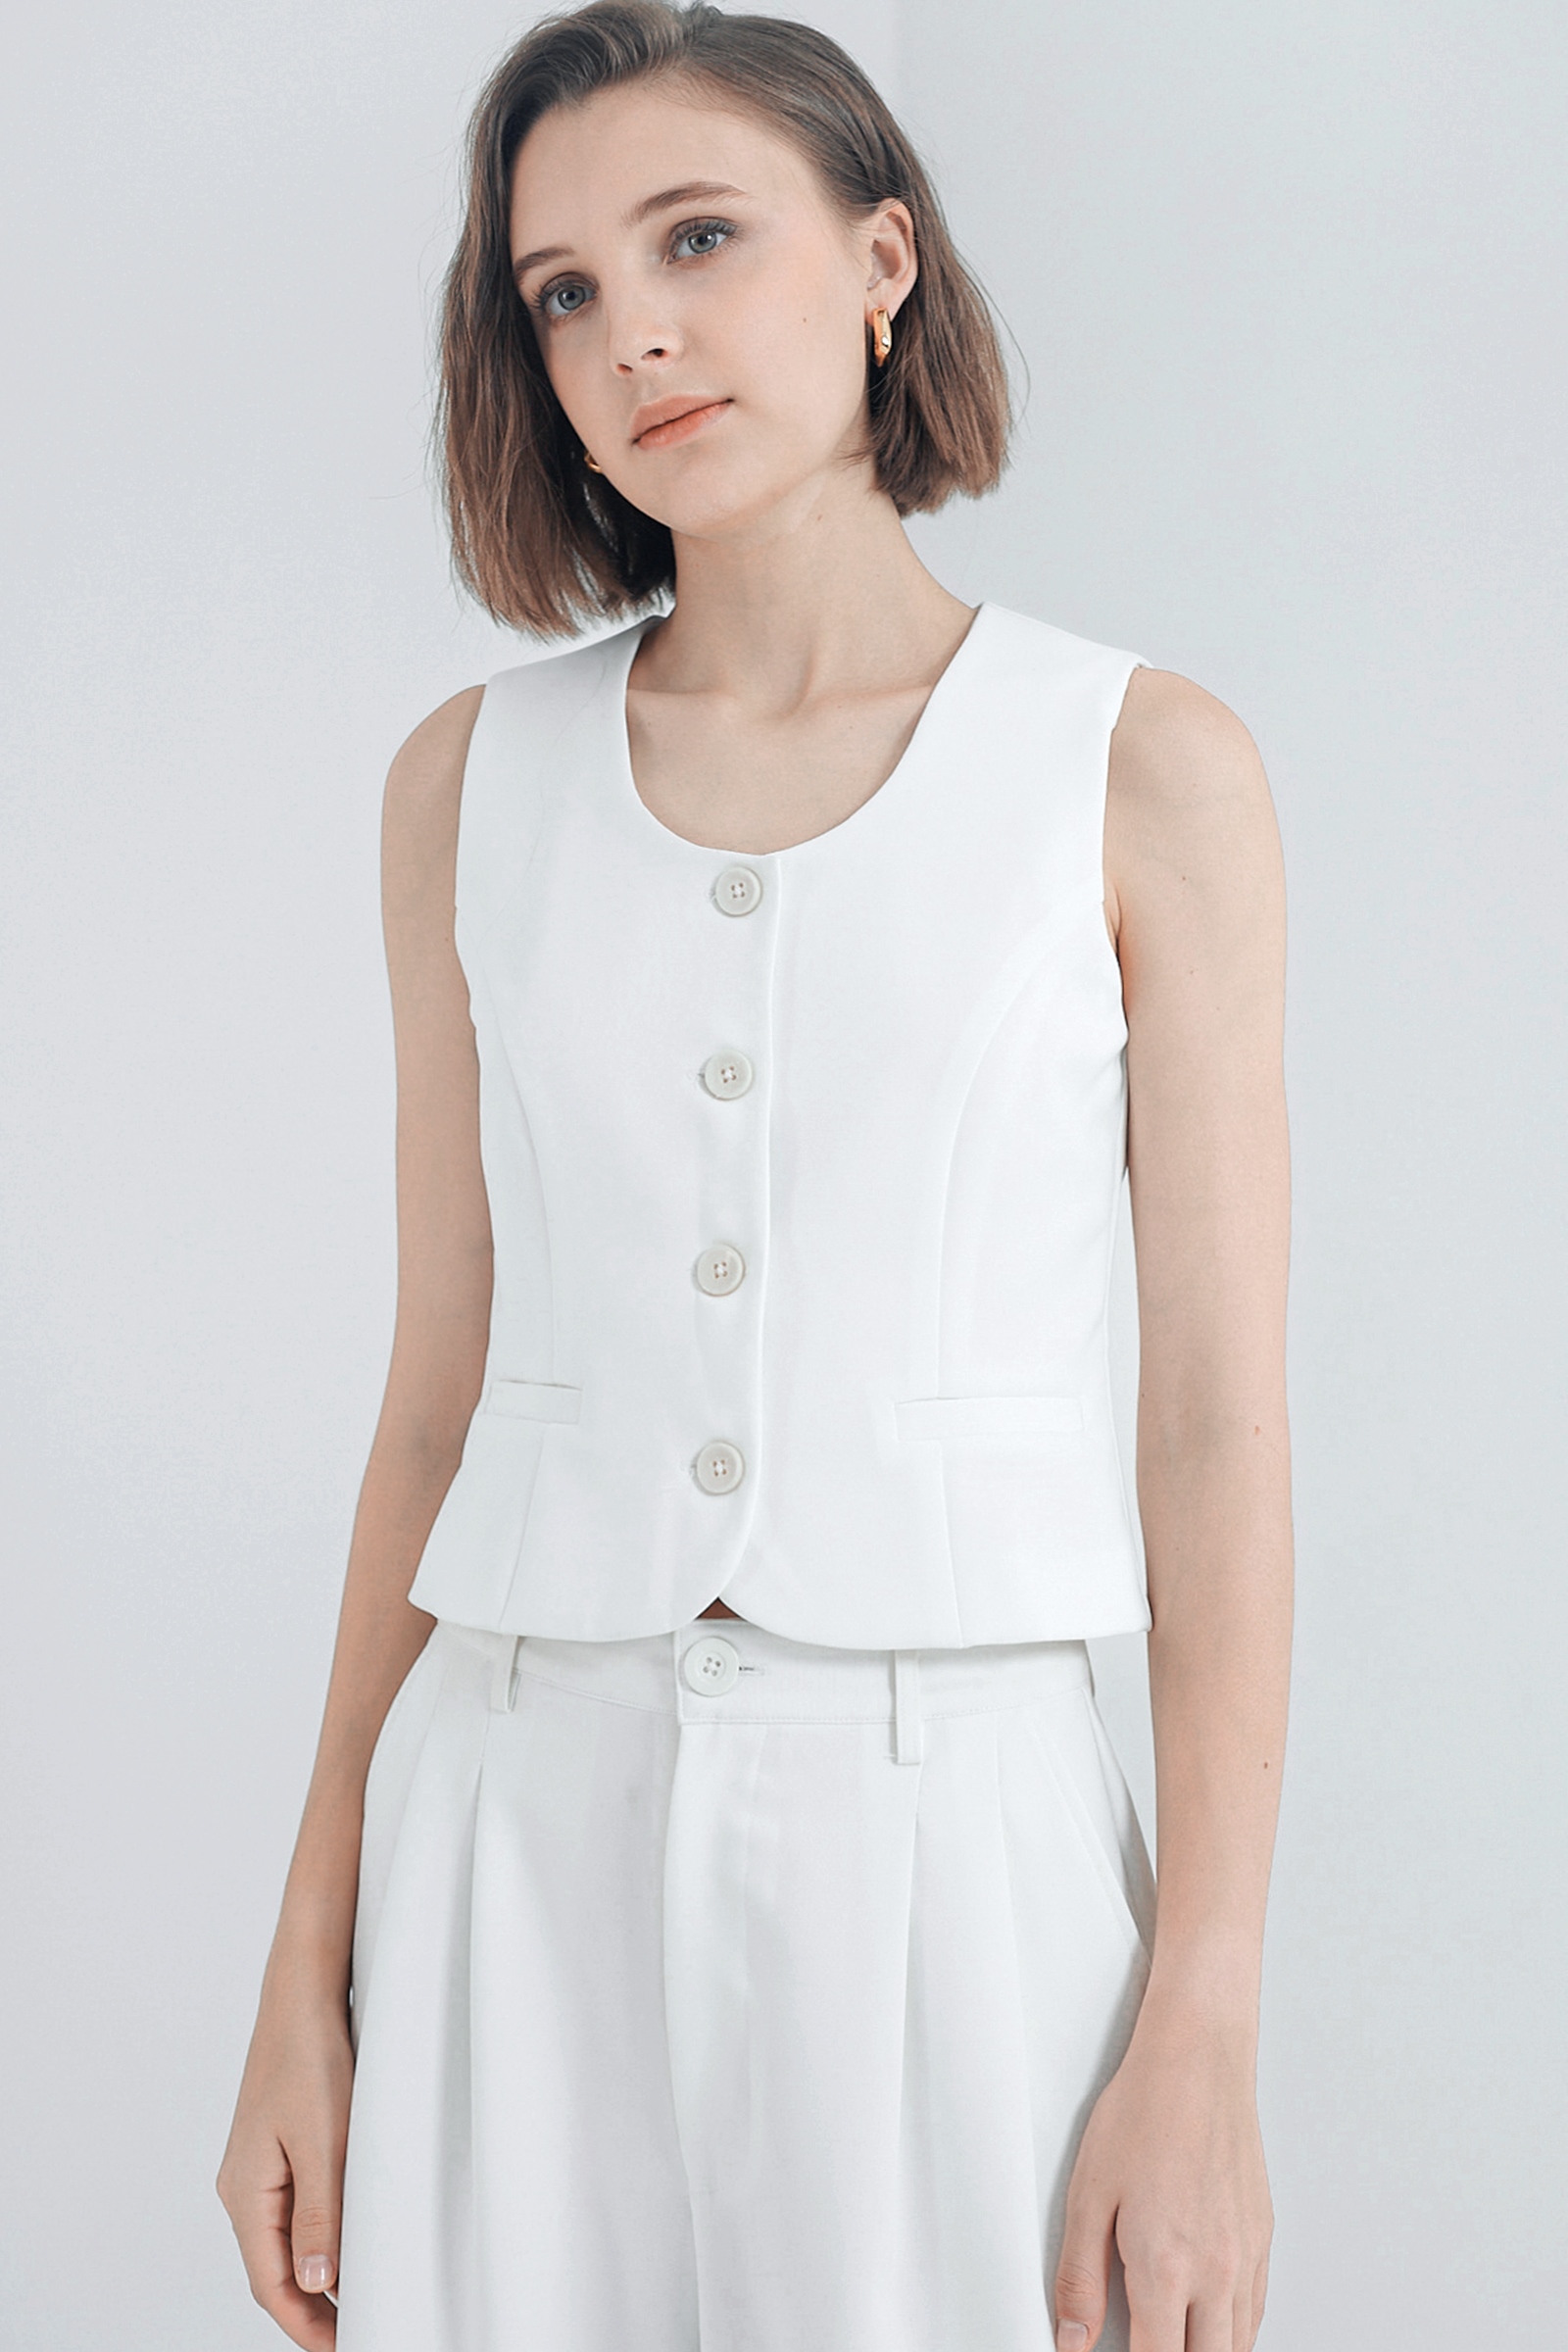 Picture of Kivee x Cath Halim - Casey Minimalist Vest Top Ivory